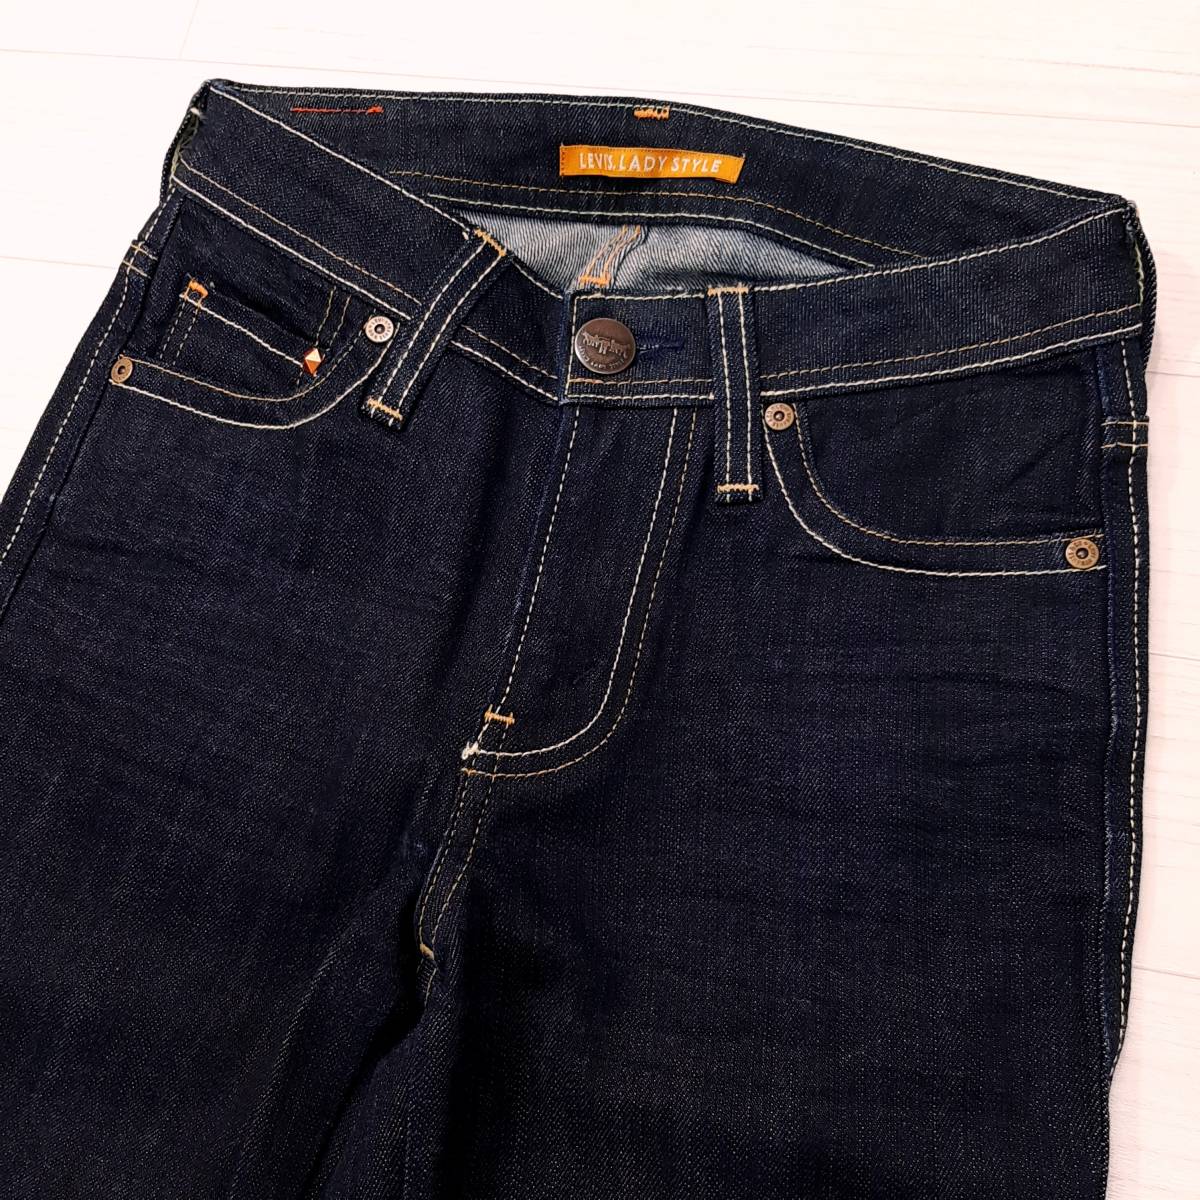 f2*LEVIS* прекрасный товар * бесплатная доставка * Levi's стрейч тонкий распорка постоянный Denim брюки W27 XS размер темно синий цвет джинсы б/у для мужчин и женщин 